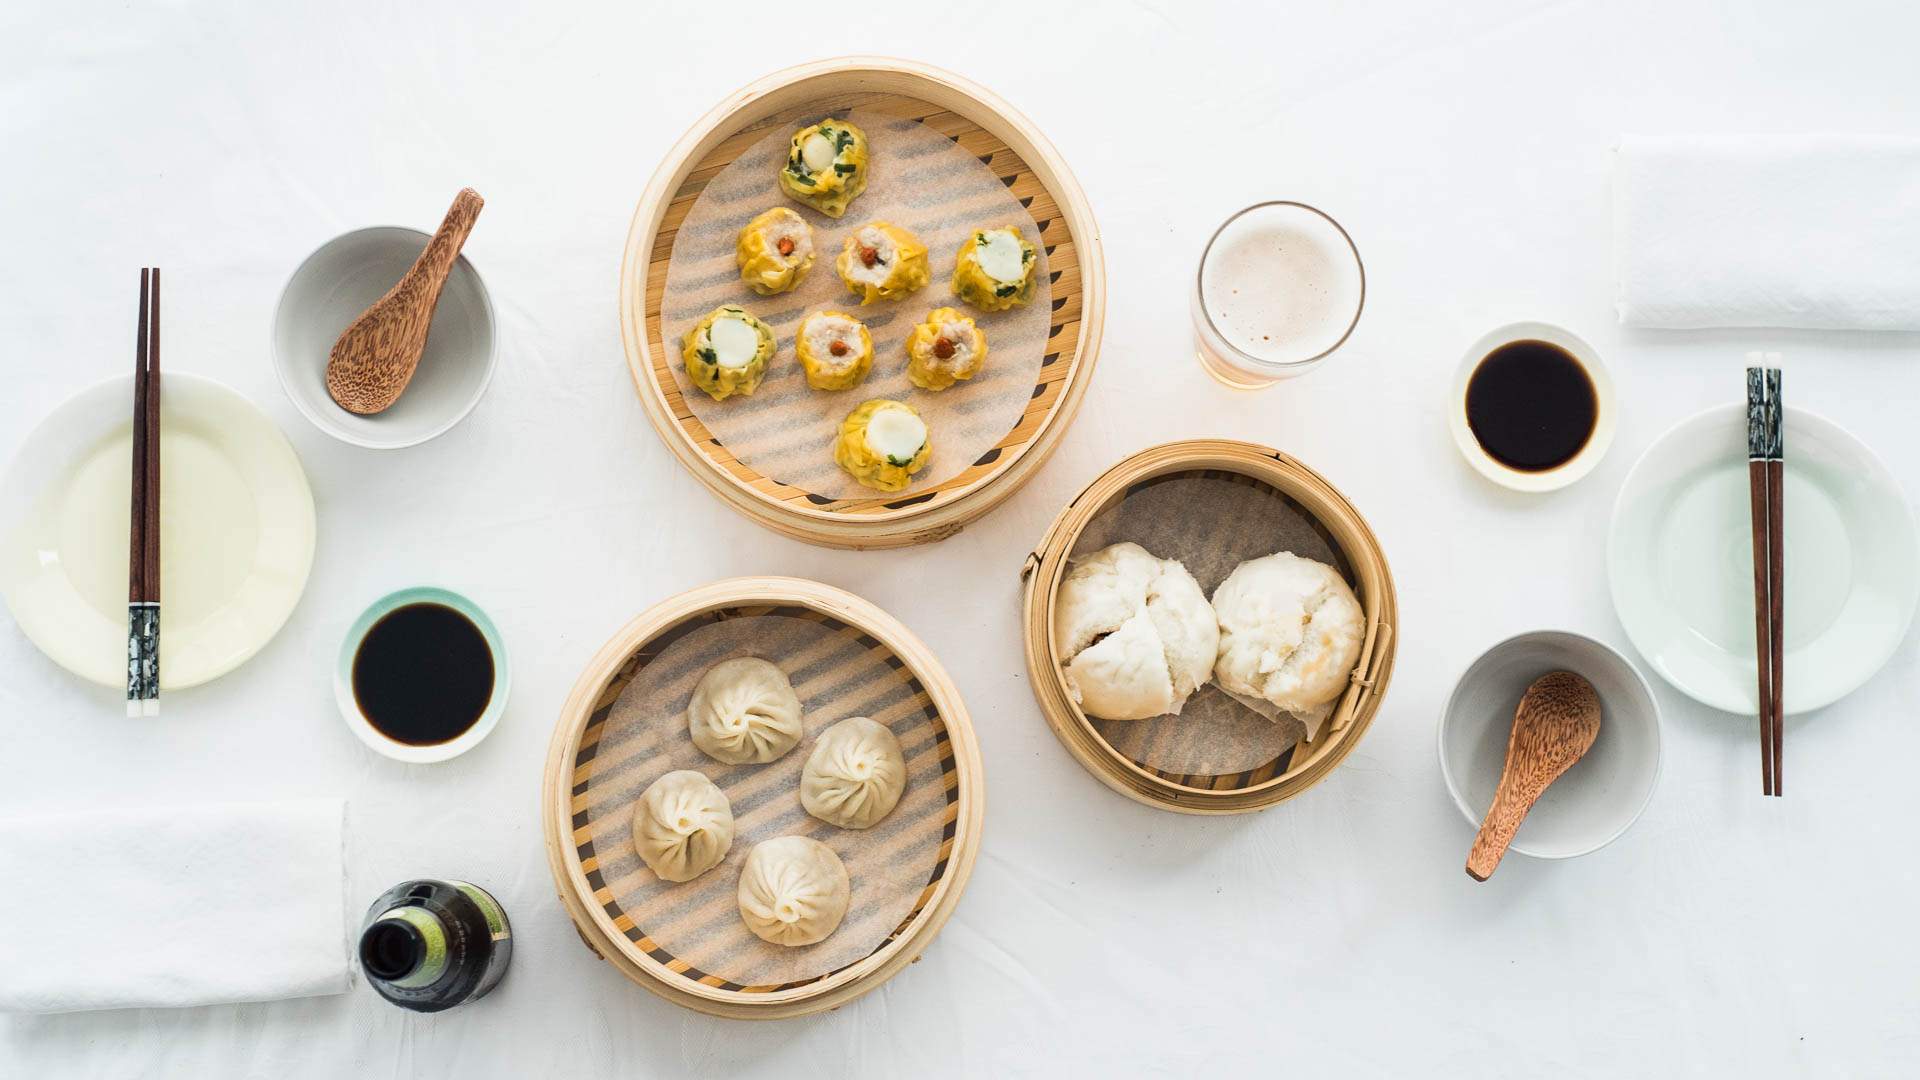 Encyclopedia of Eats: Chinese Dumplings